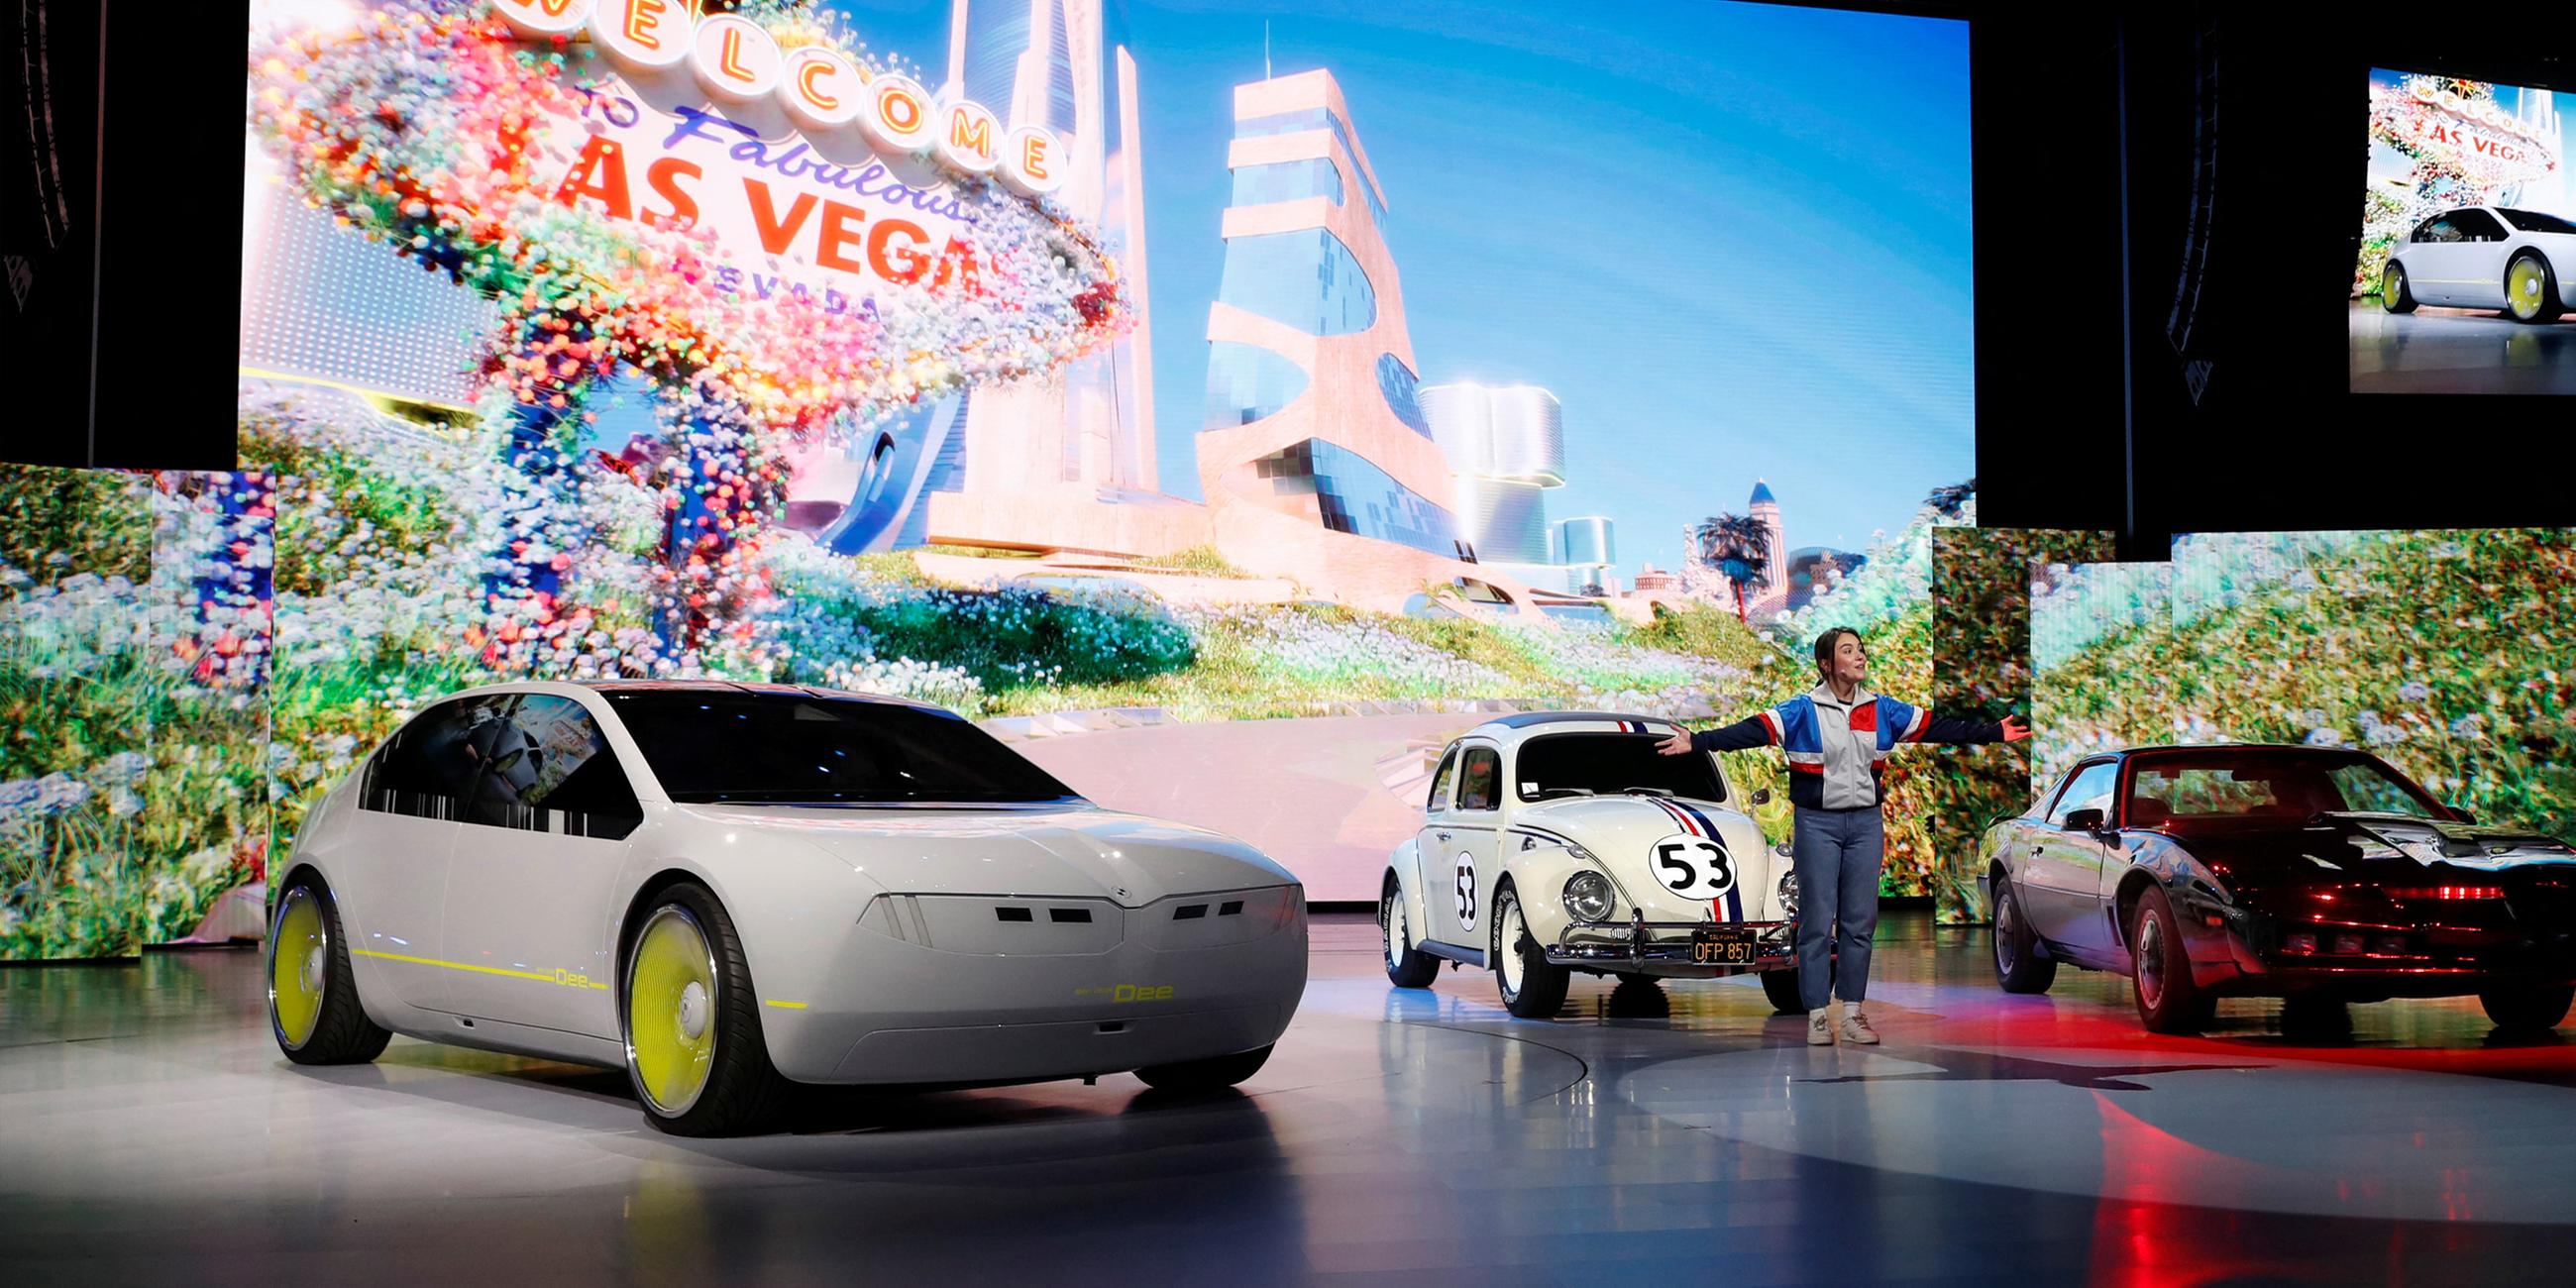 Das Konzeptfahrzeug BMW i Vision Dee (Digital Emotional Experience) teilt sich die Bühne mit Autos, die Herbie the Love Bug und KITT aus der Fernsehsendung Knight Rider während einer BMW Keynote auf der CES 2023, einer jährlichen Fachmesse für Unterhaltungselektronik, in Las Vegas repräsentieren